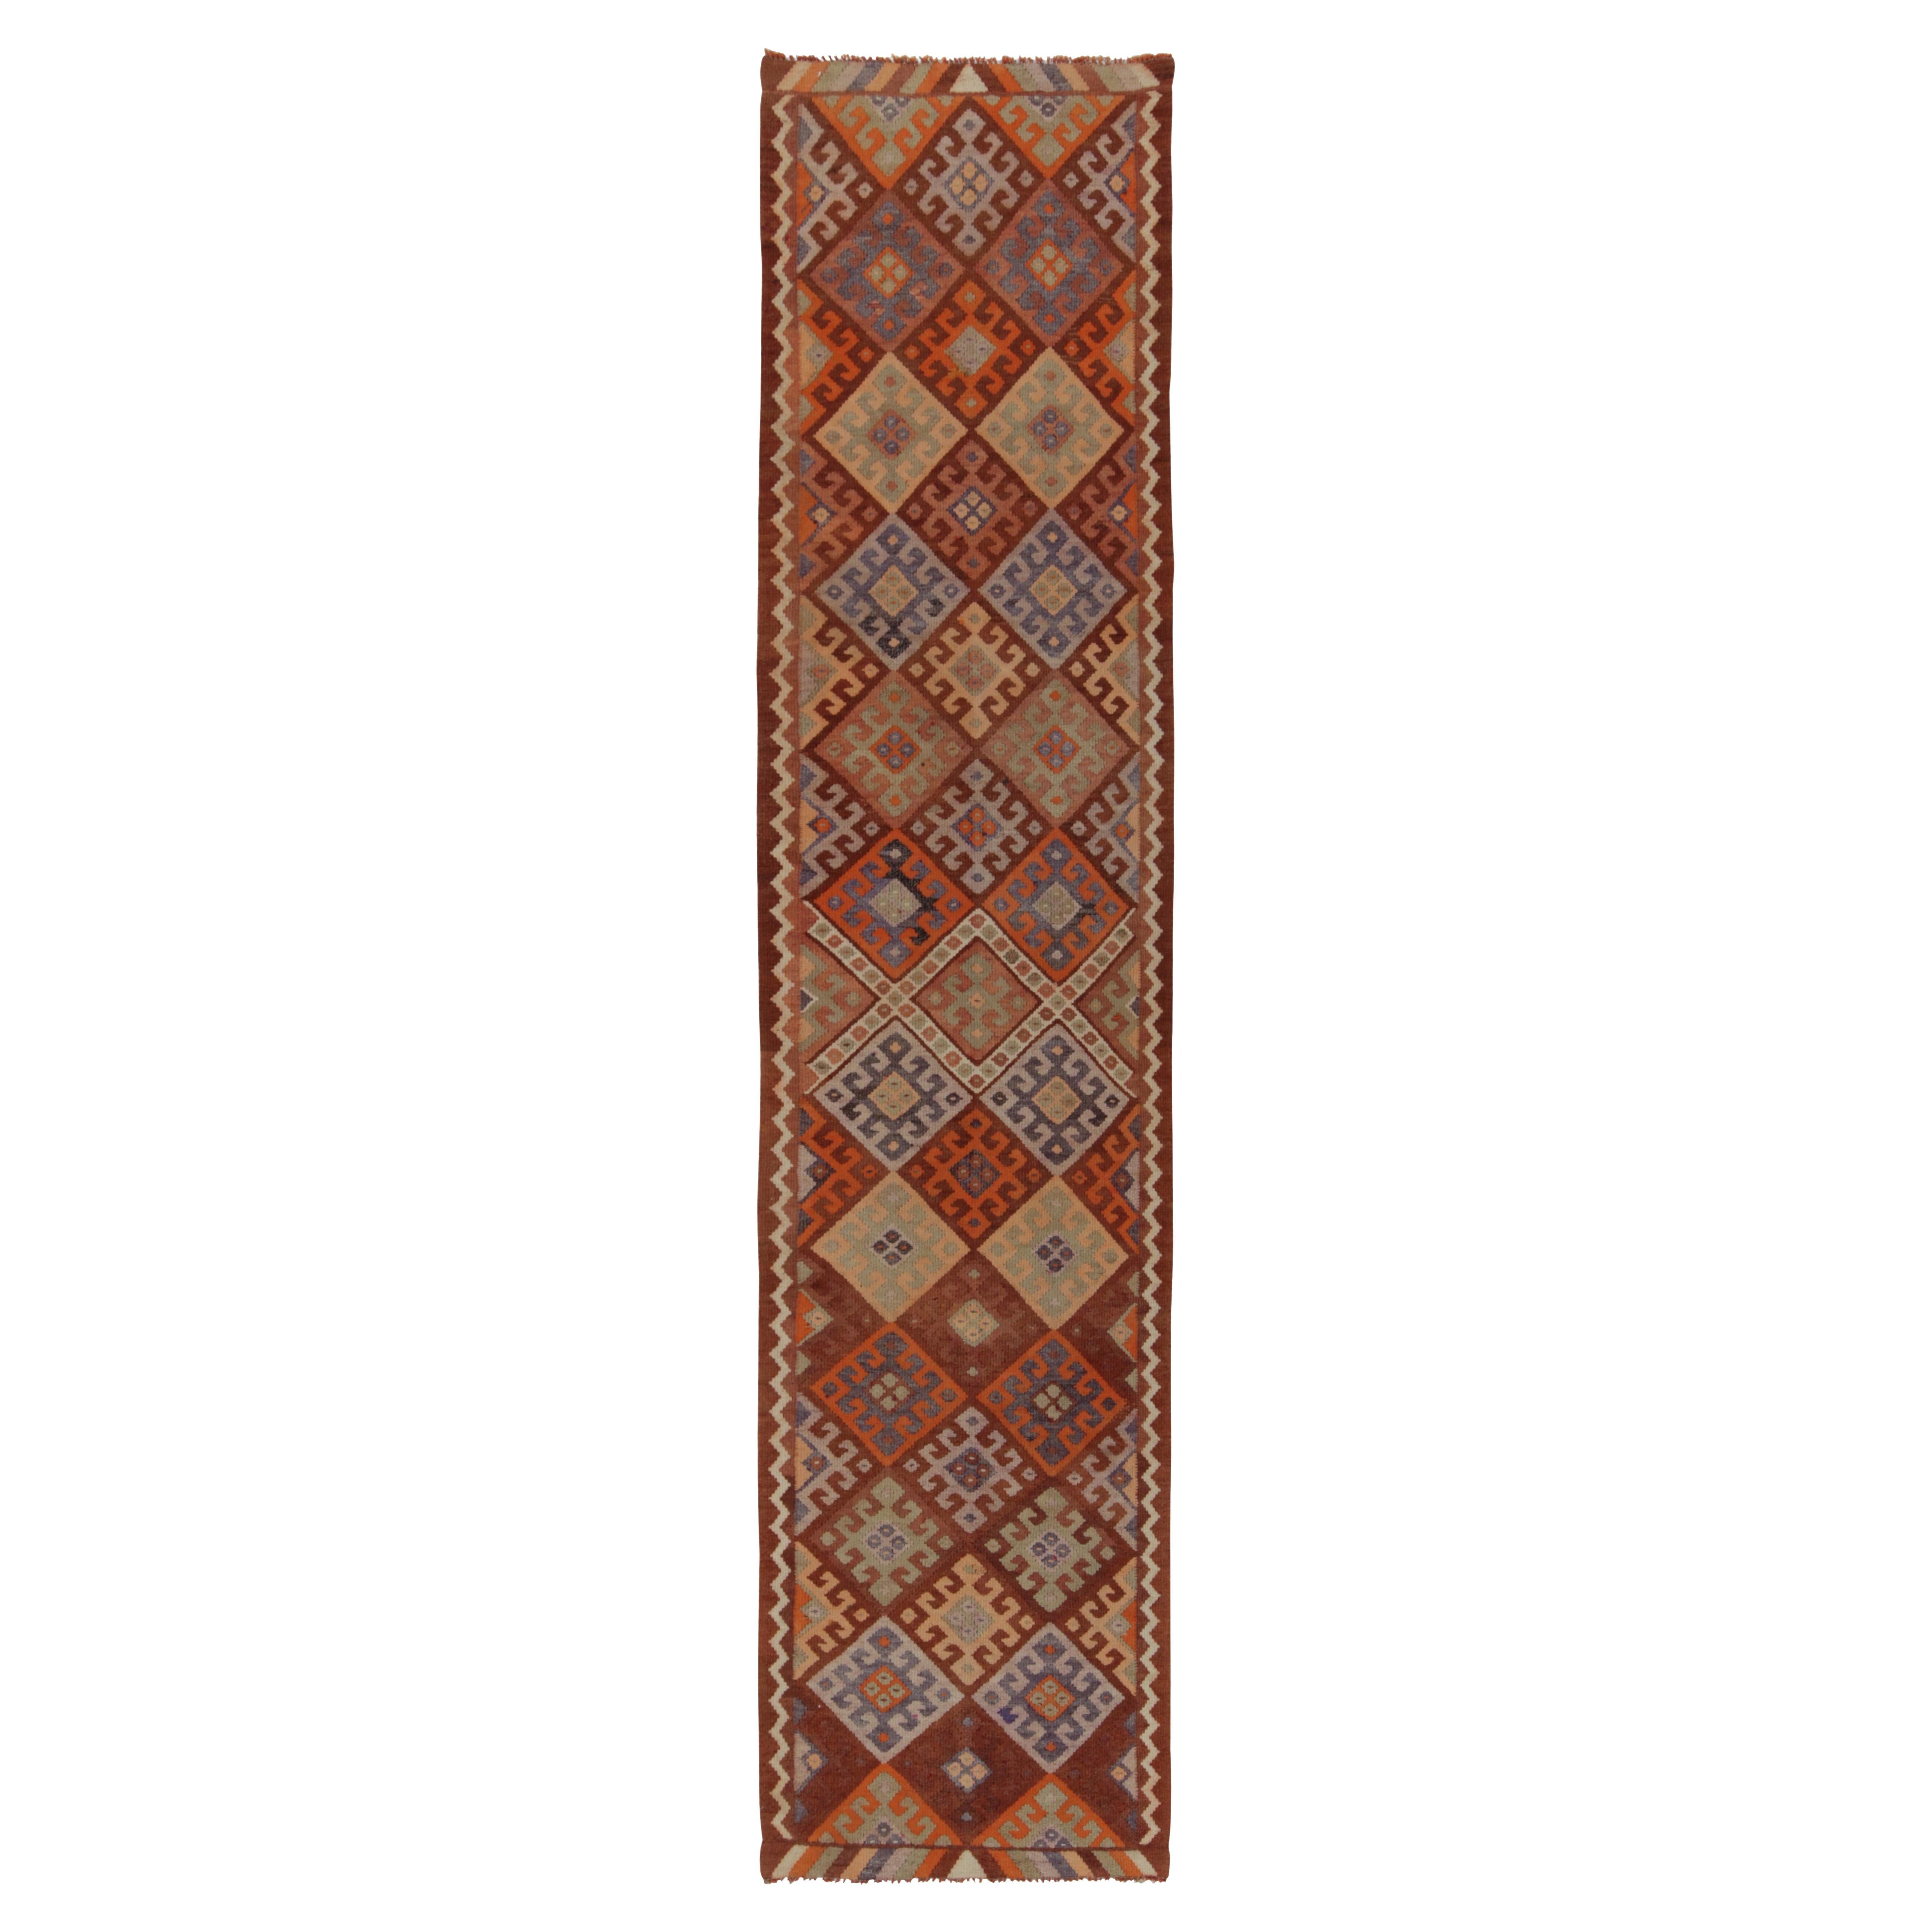 Vintage Tribal Kilim Runner in Rust Brown Geometric Pattern by Rug & Kilim